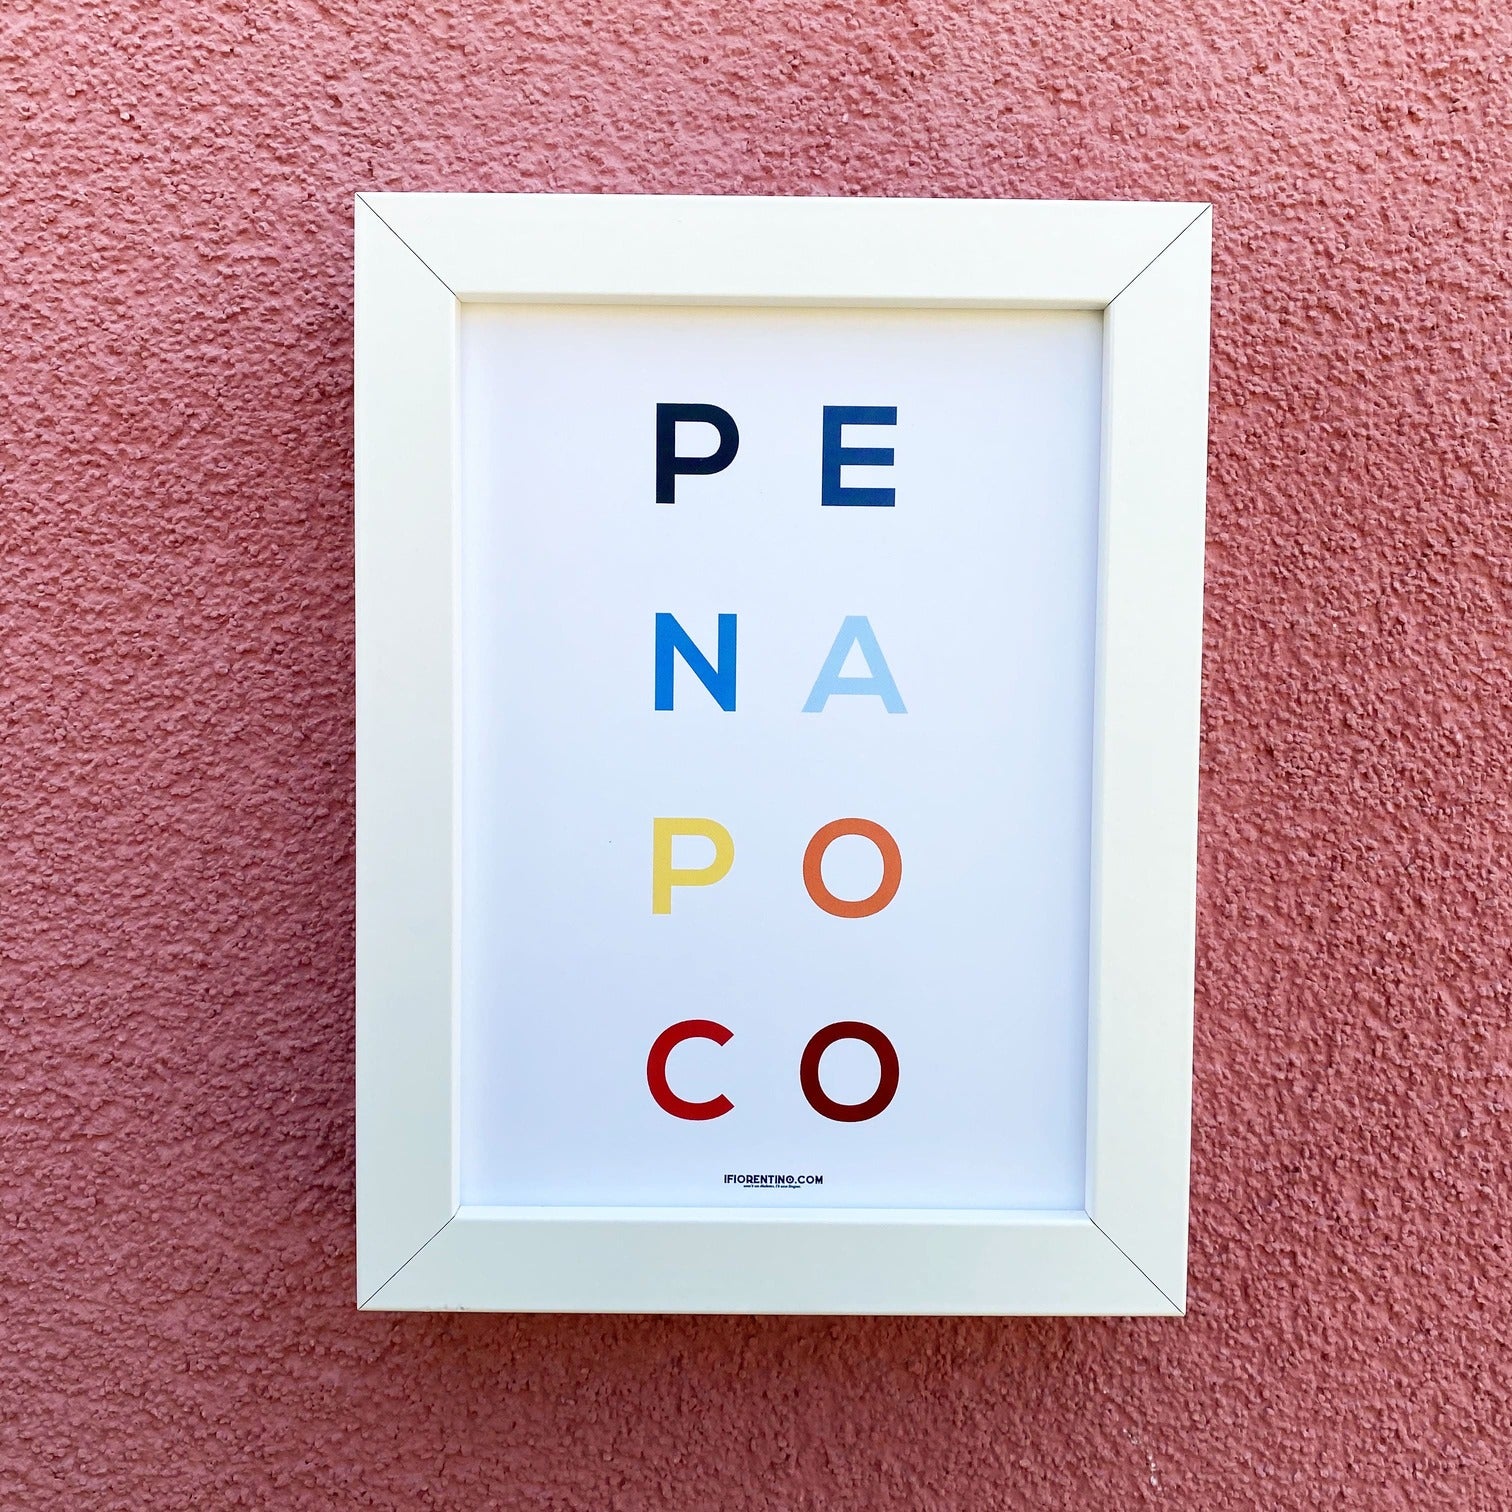 PENAPOCO STAMPA + CORNICE - poster fiorentini - poster firenze - regalo fiorentino - fiorentino  - foppeddittelo